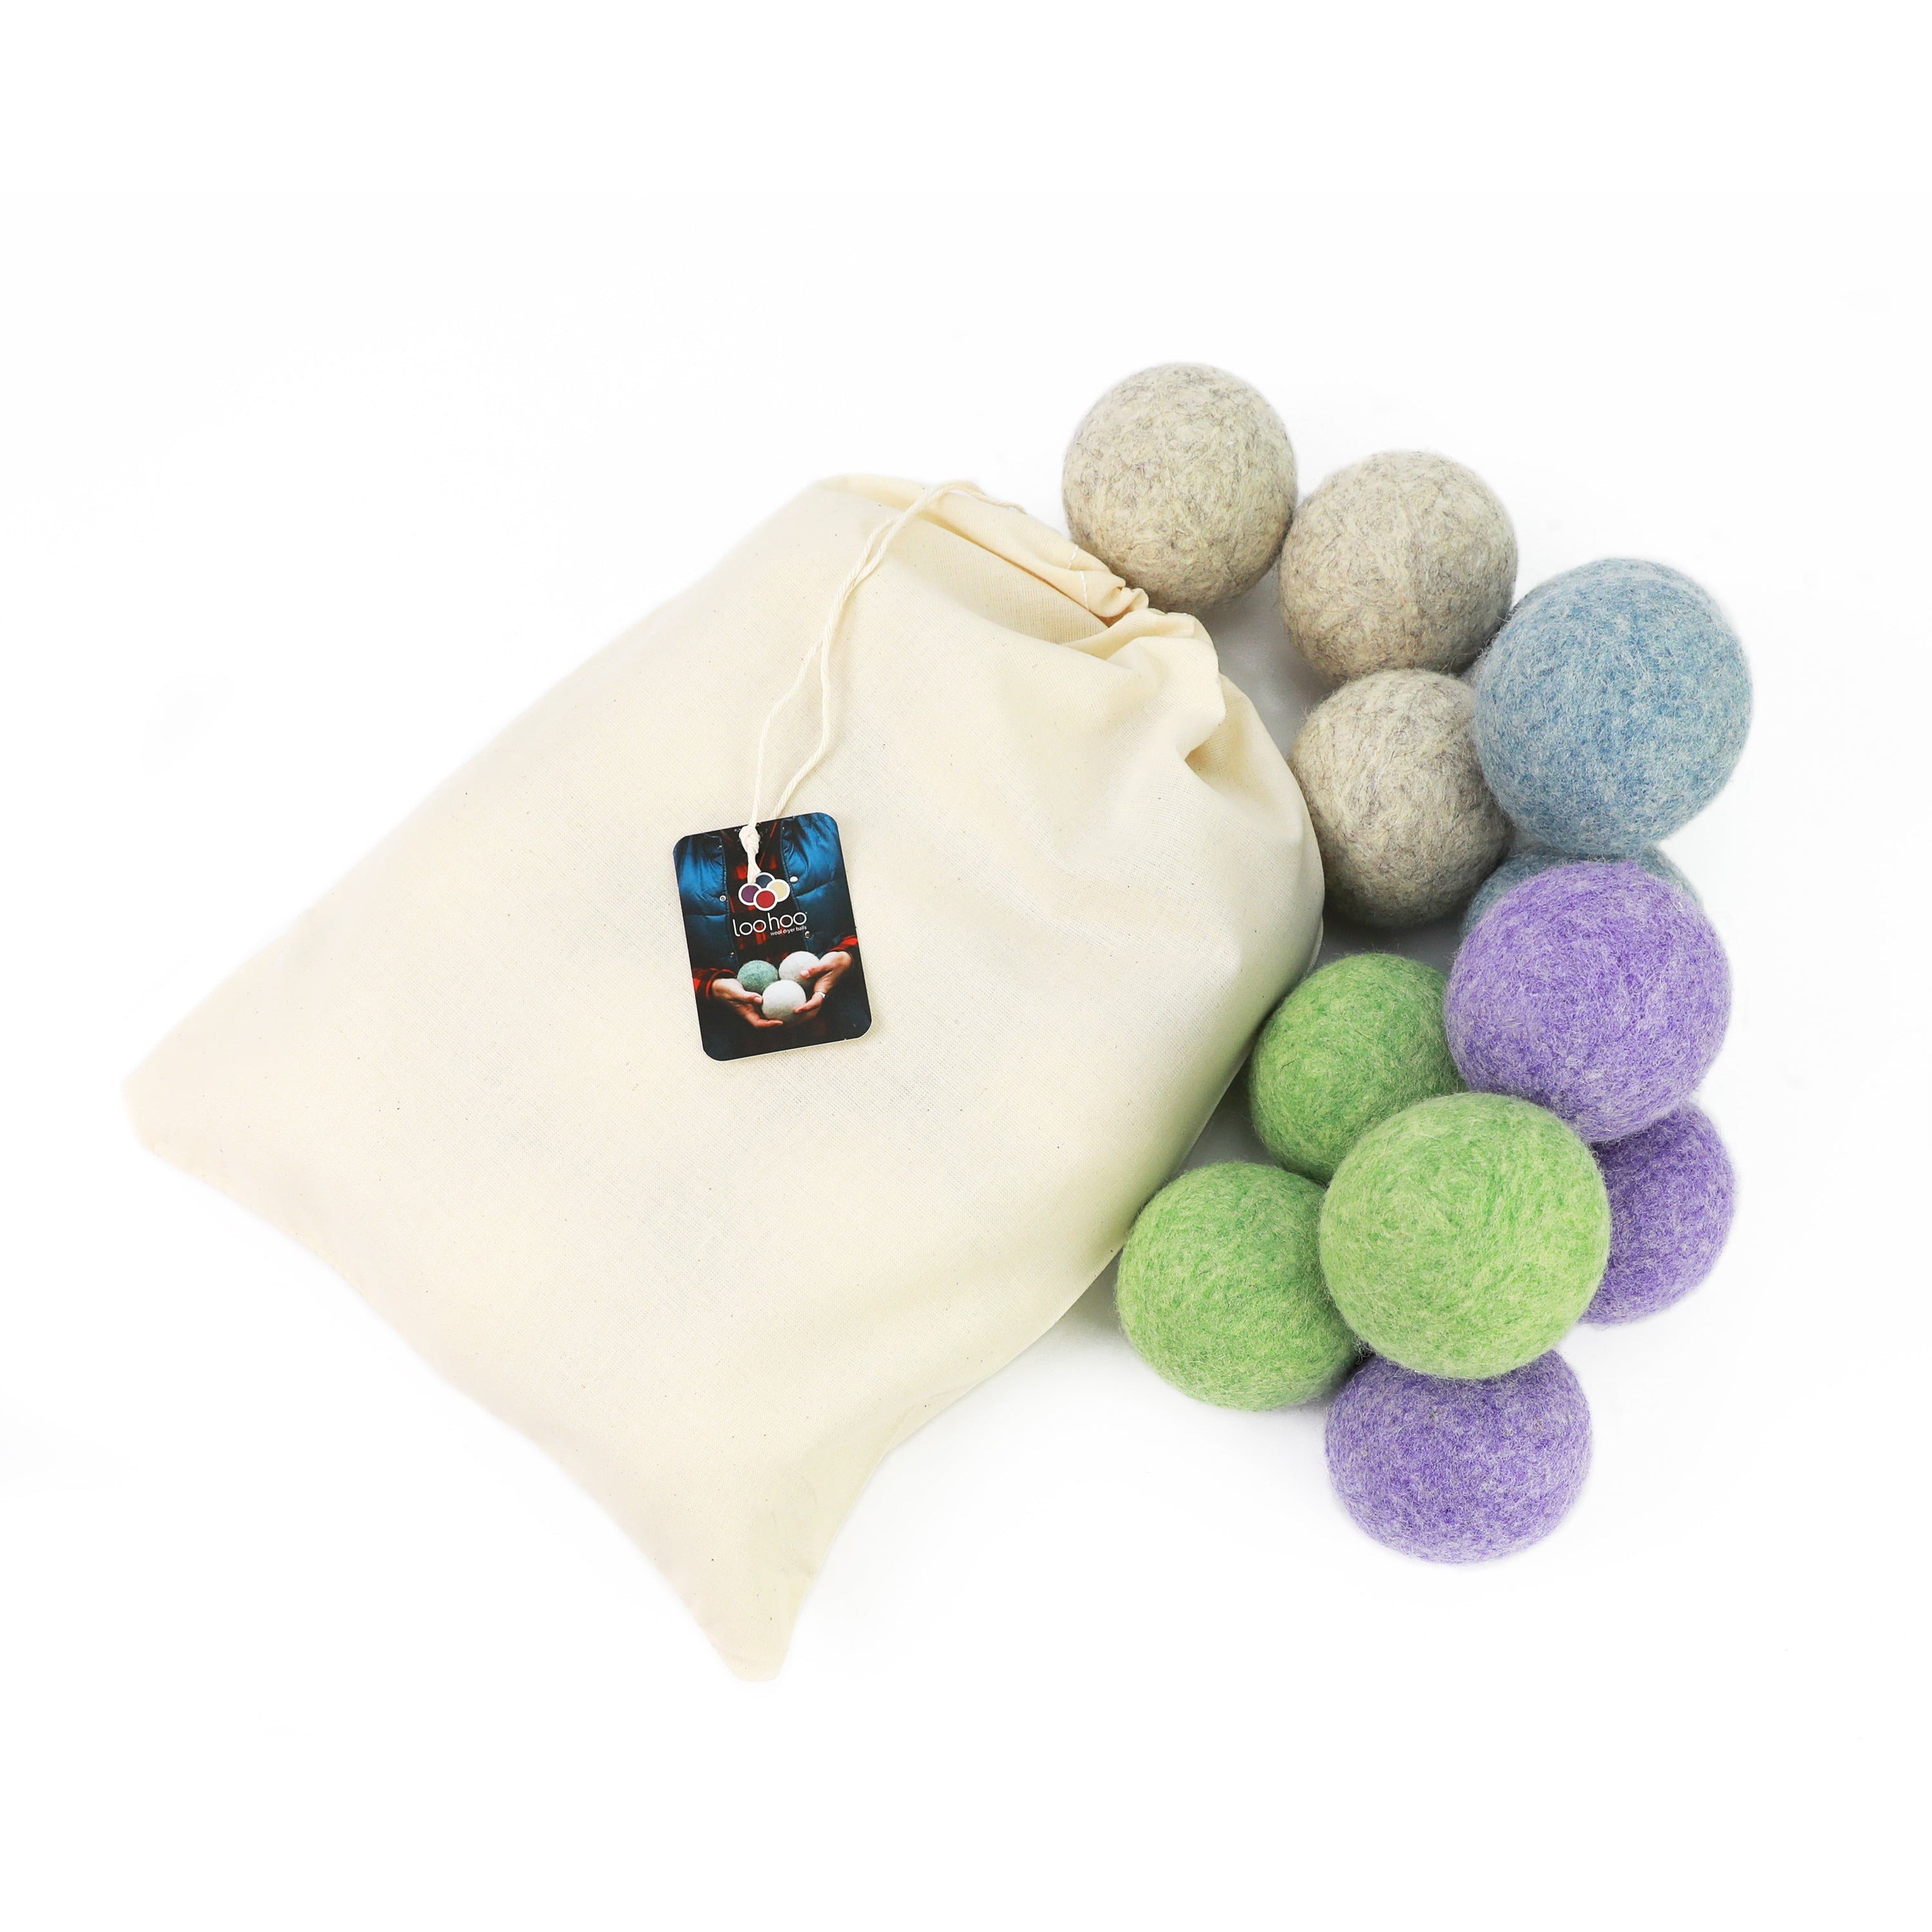 LooHoo Wool Dryer Balls